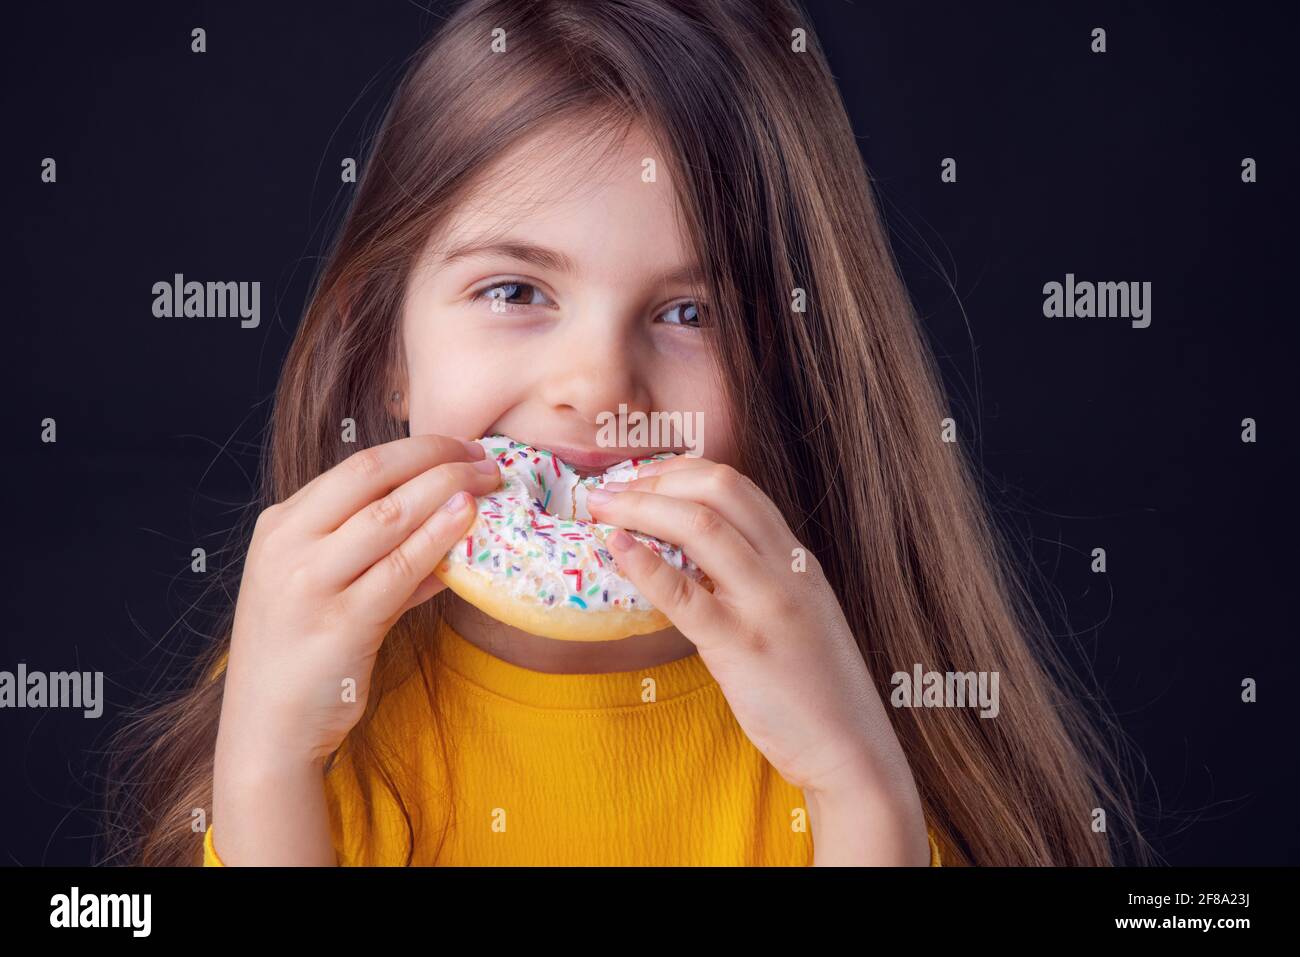 Sweet little girl eating white donut Stock Photo